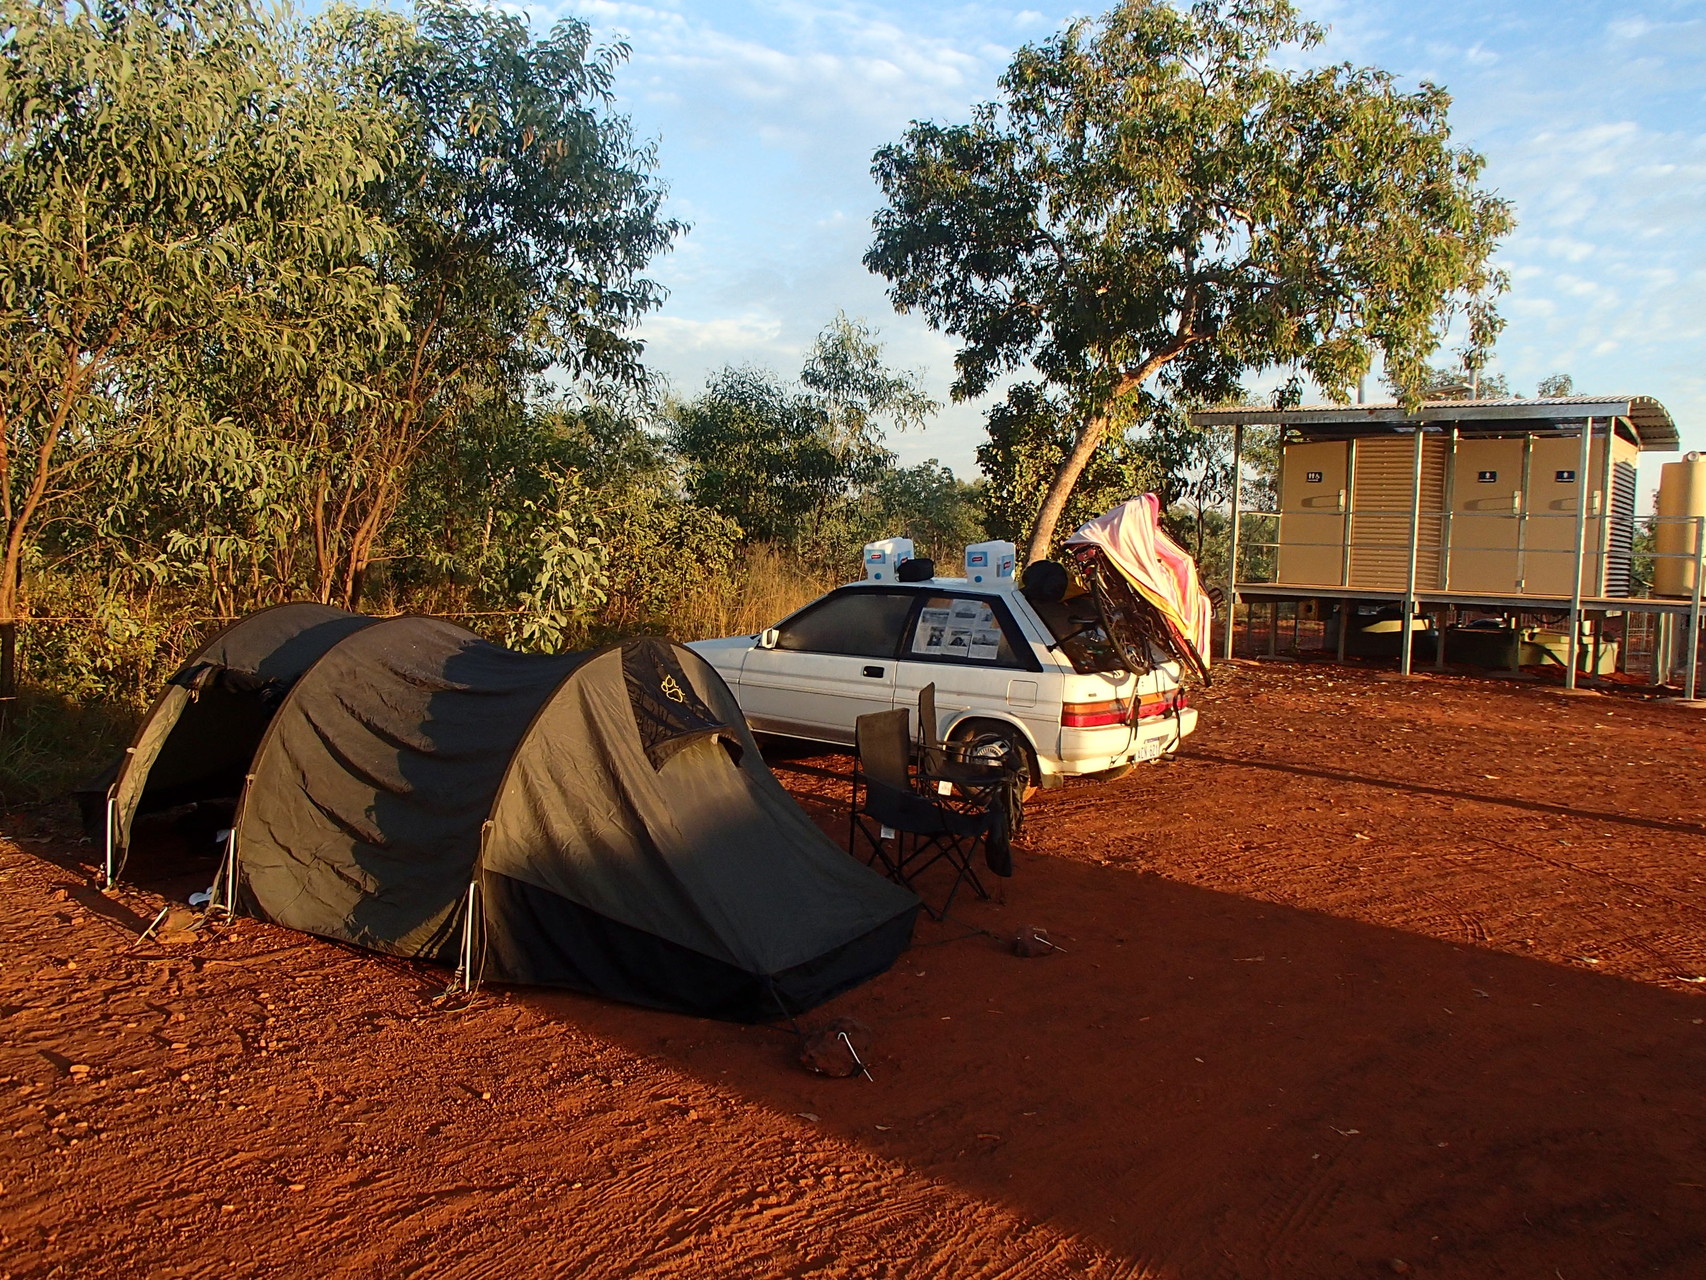 Campen an einer Rest Area, einer australischen Raststätte. Nachts bekamen wir Besuch von Dingos, die sich heulend auf dem Platz breit machten. Wir harrten bis zur Dämmerung im Zelt aus.